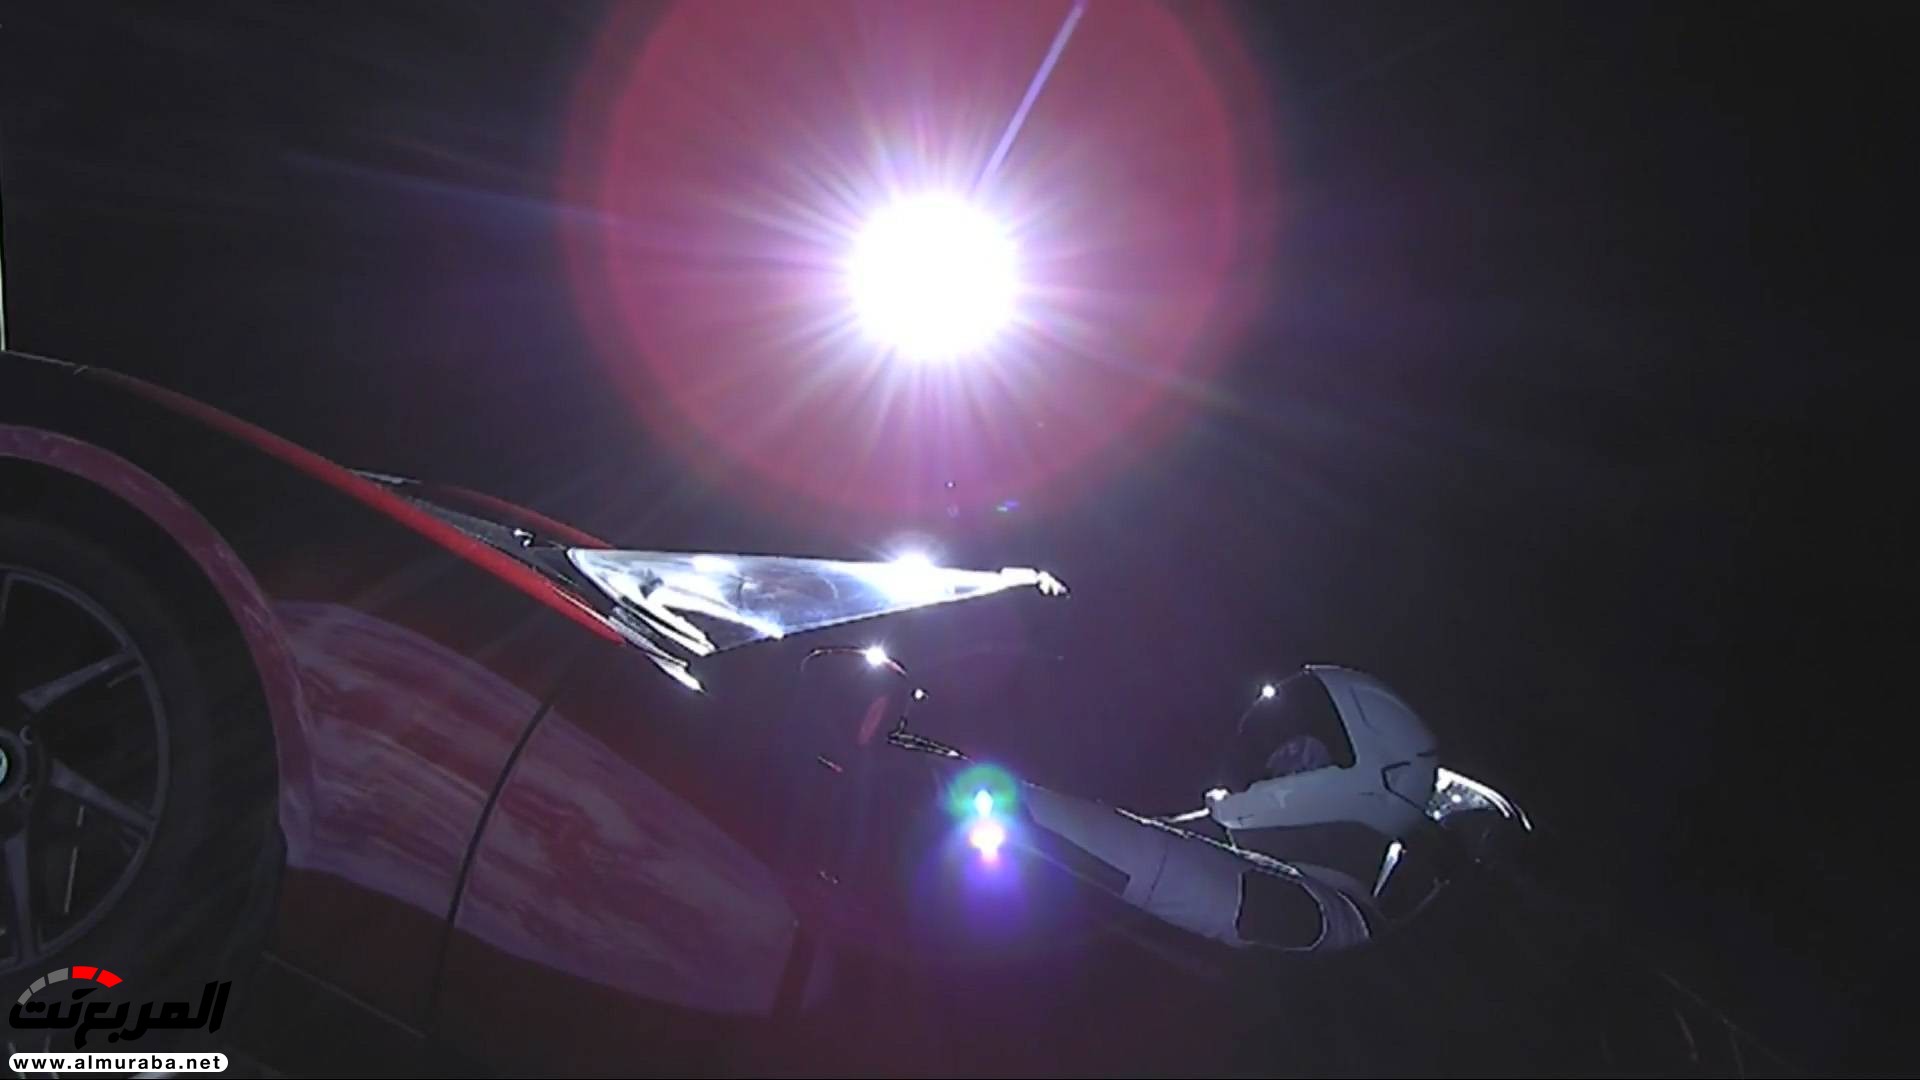 "بالفيديو والصور" إيلون ماسك يطلق تيسلا رودستر إلى المريخ في أقوى صاروخ بالعالم 37